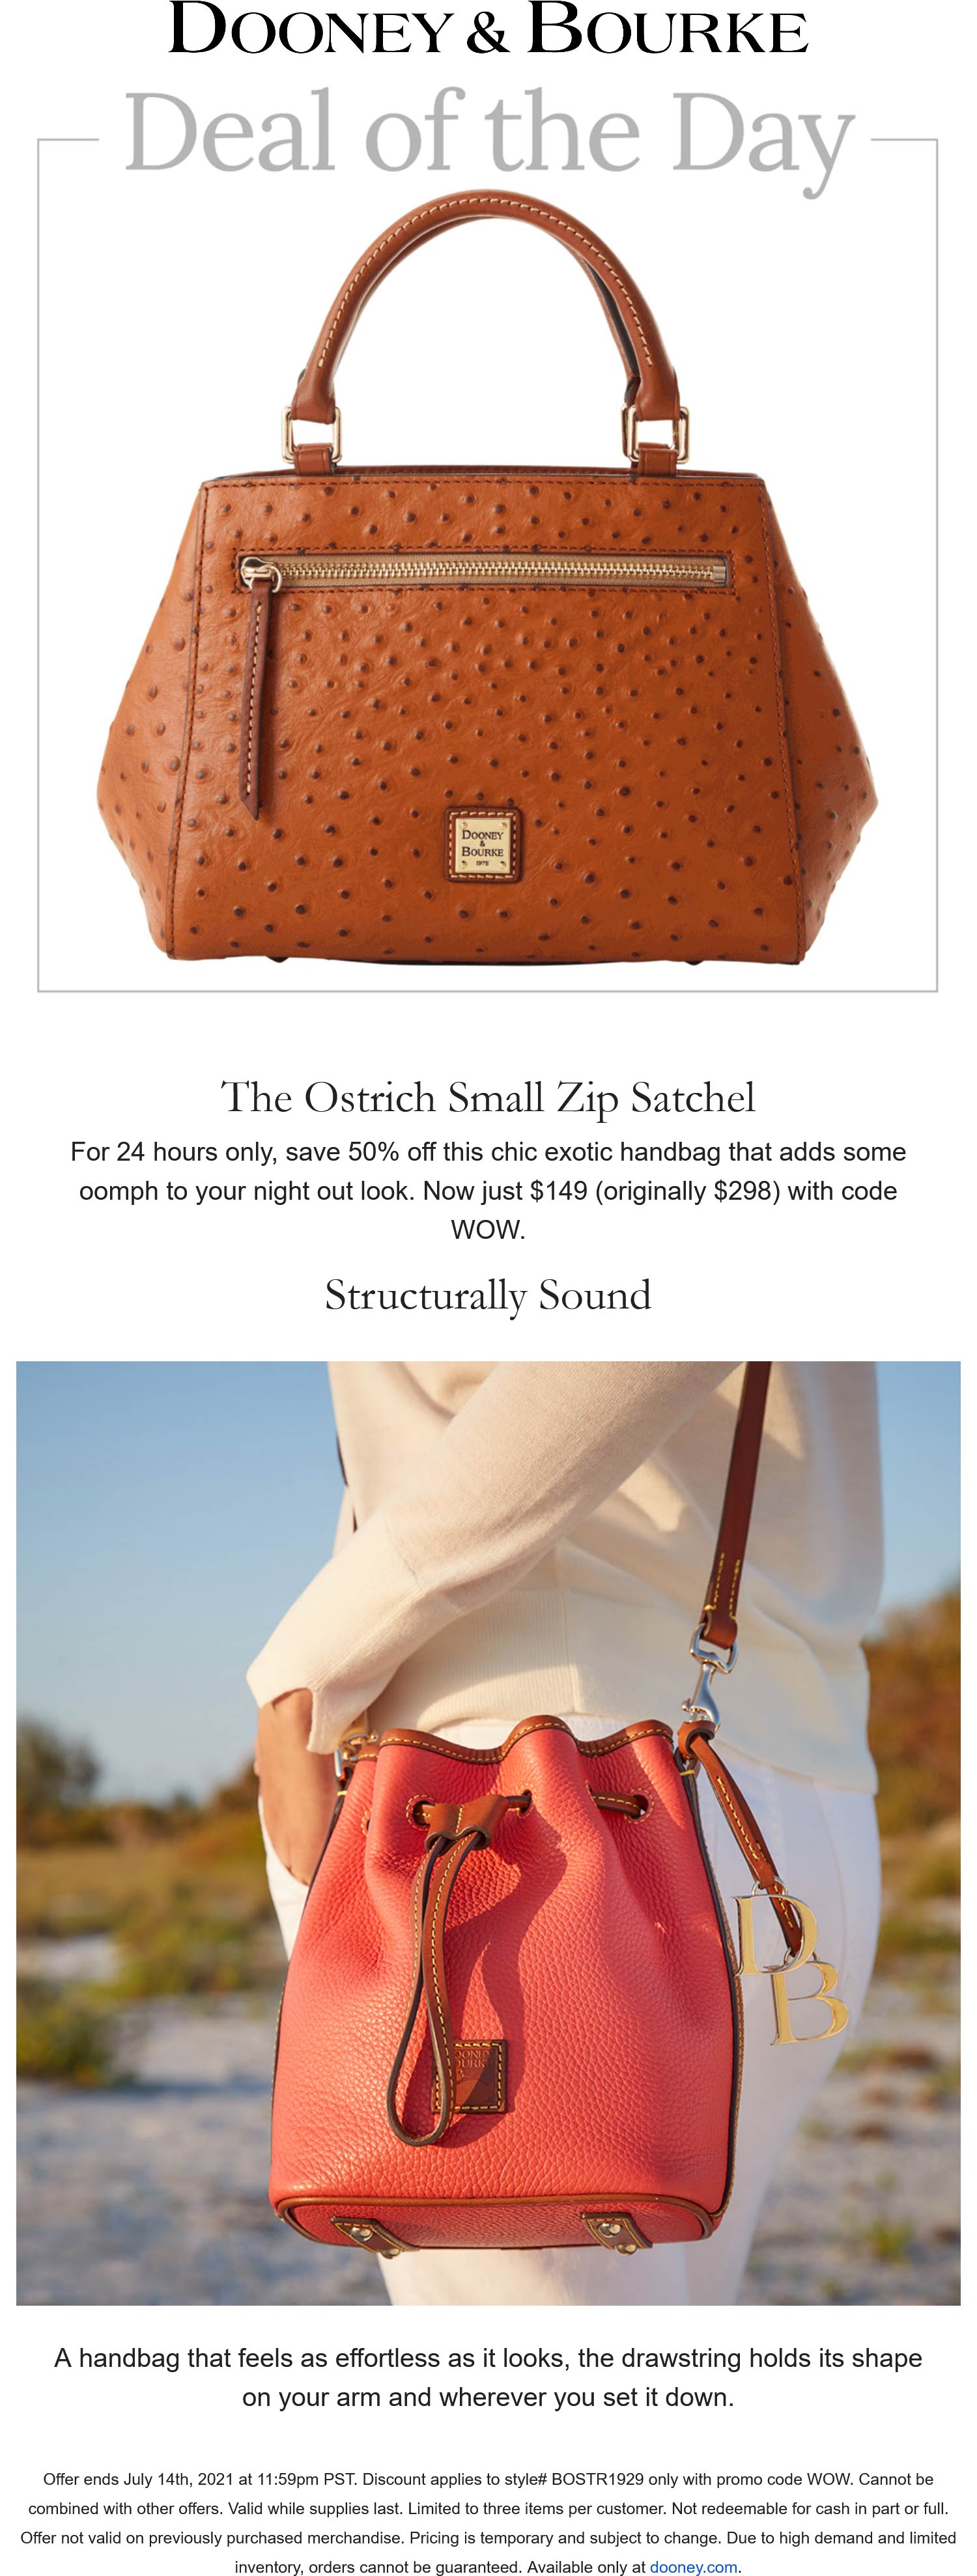 Dooney & Bourke stores Coupon  50% off Ostrich satchel at Dooney & Bourke via promo code WOW #dooneybourke 